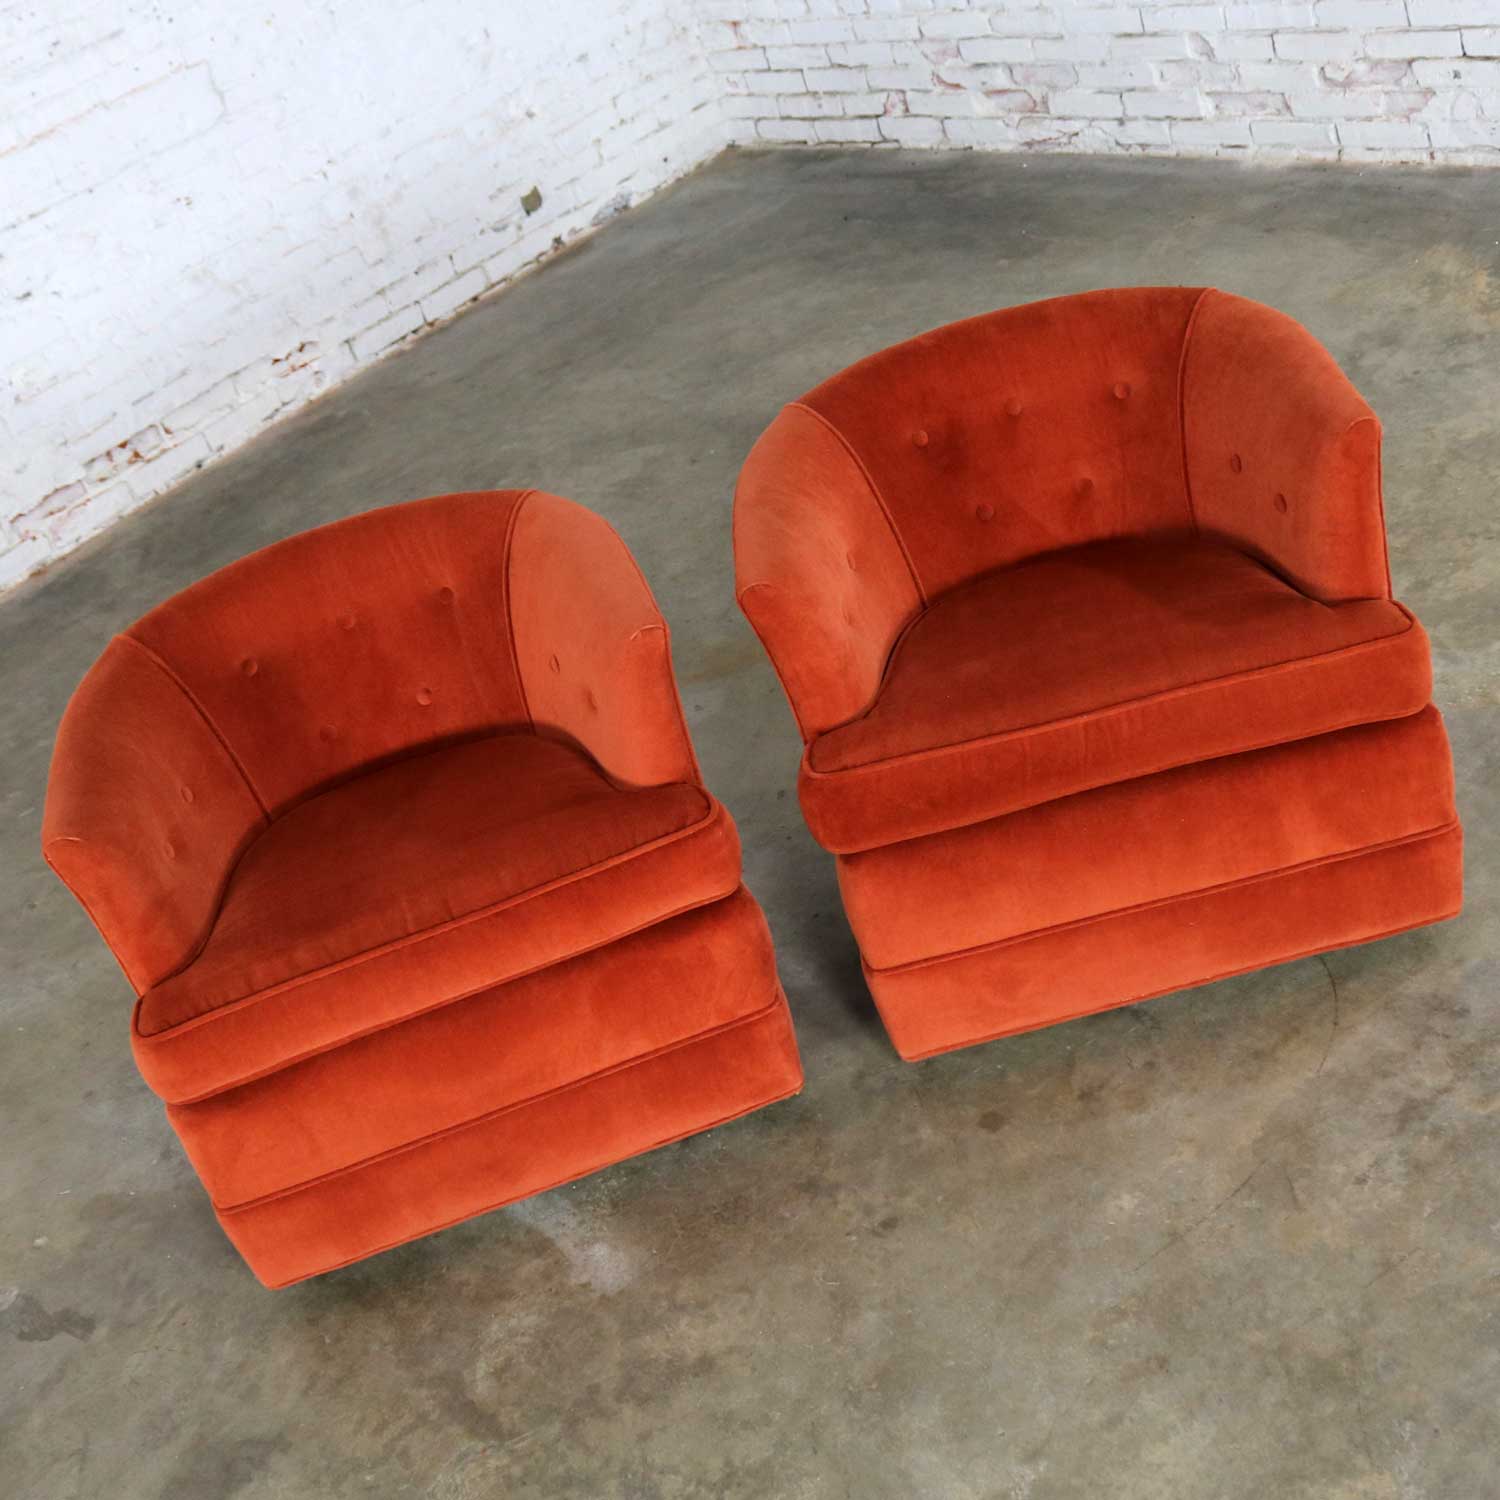 Vintage Petite Pair Hollywood Regency MCM Barrel Chairs in Burnt Orange on Casters